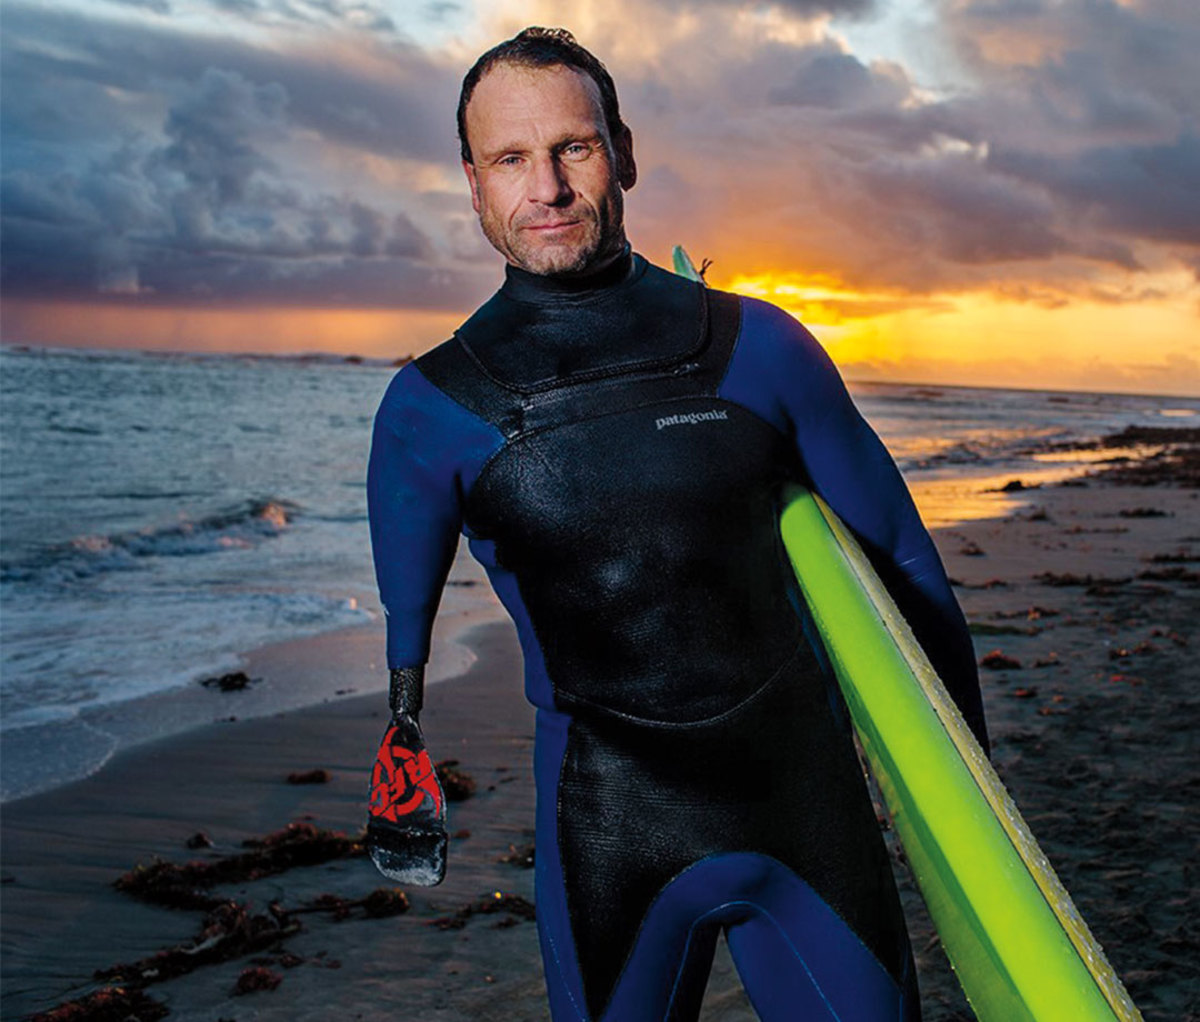 Portrait of Jeff Denholm holding surfboard against a sunset